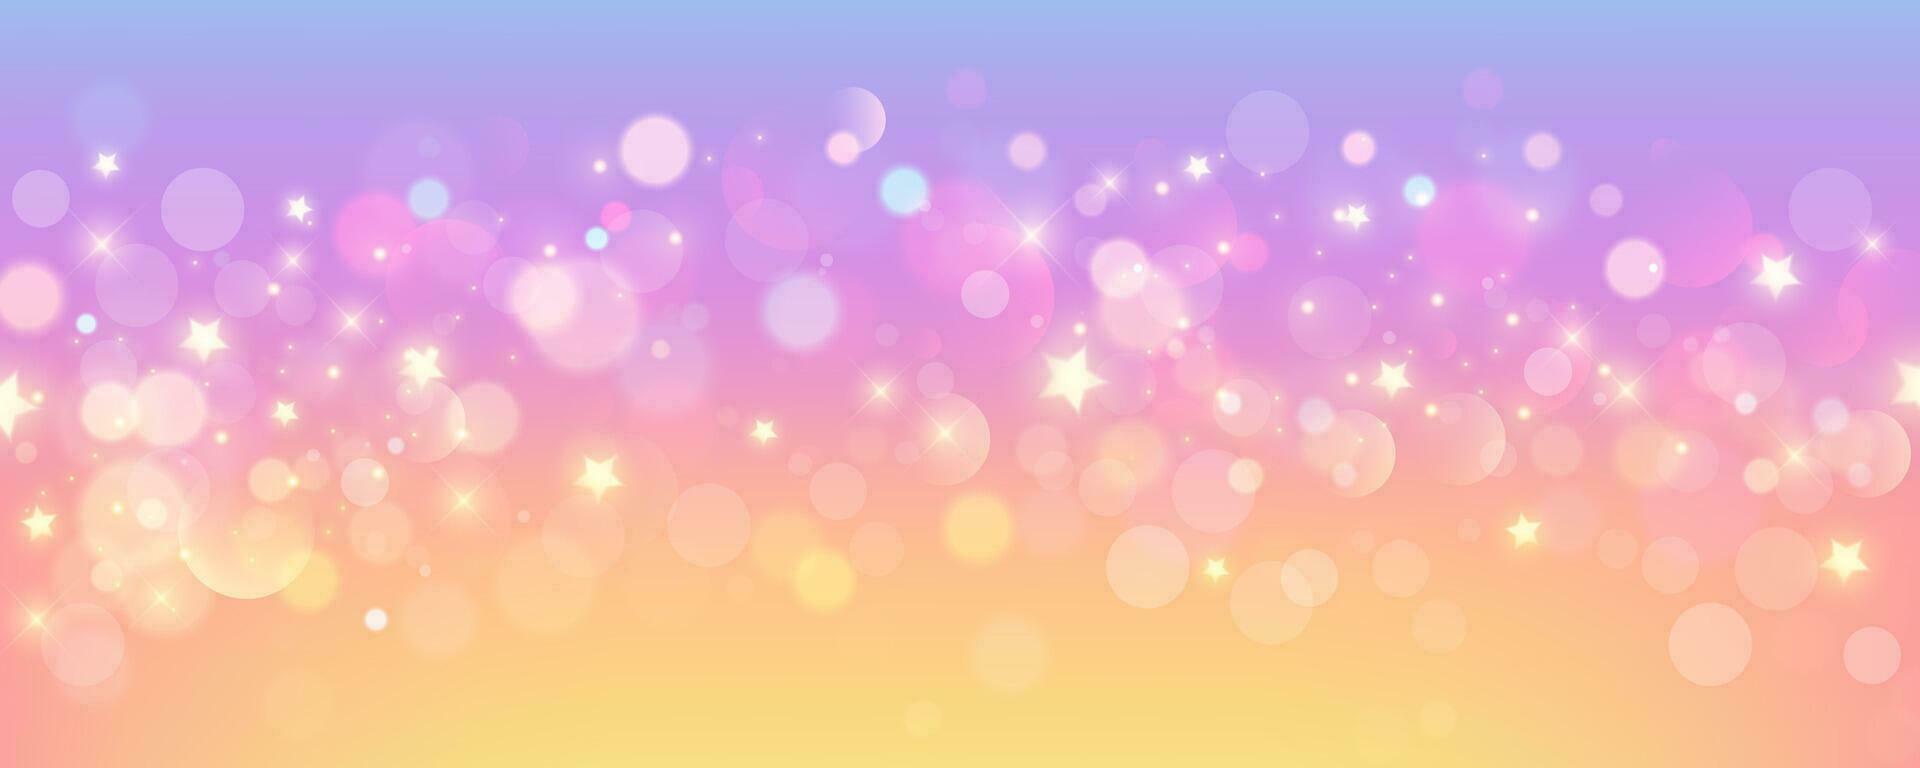 regnbåge enhörning pastell bakgrund med glitter stjärnor. rosa fantasi himmel. holografiska Plats med bokeh. fe- regnbågsskimrande lutning bakgrund. vektor